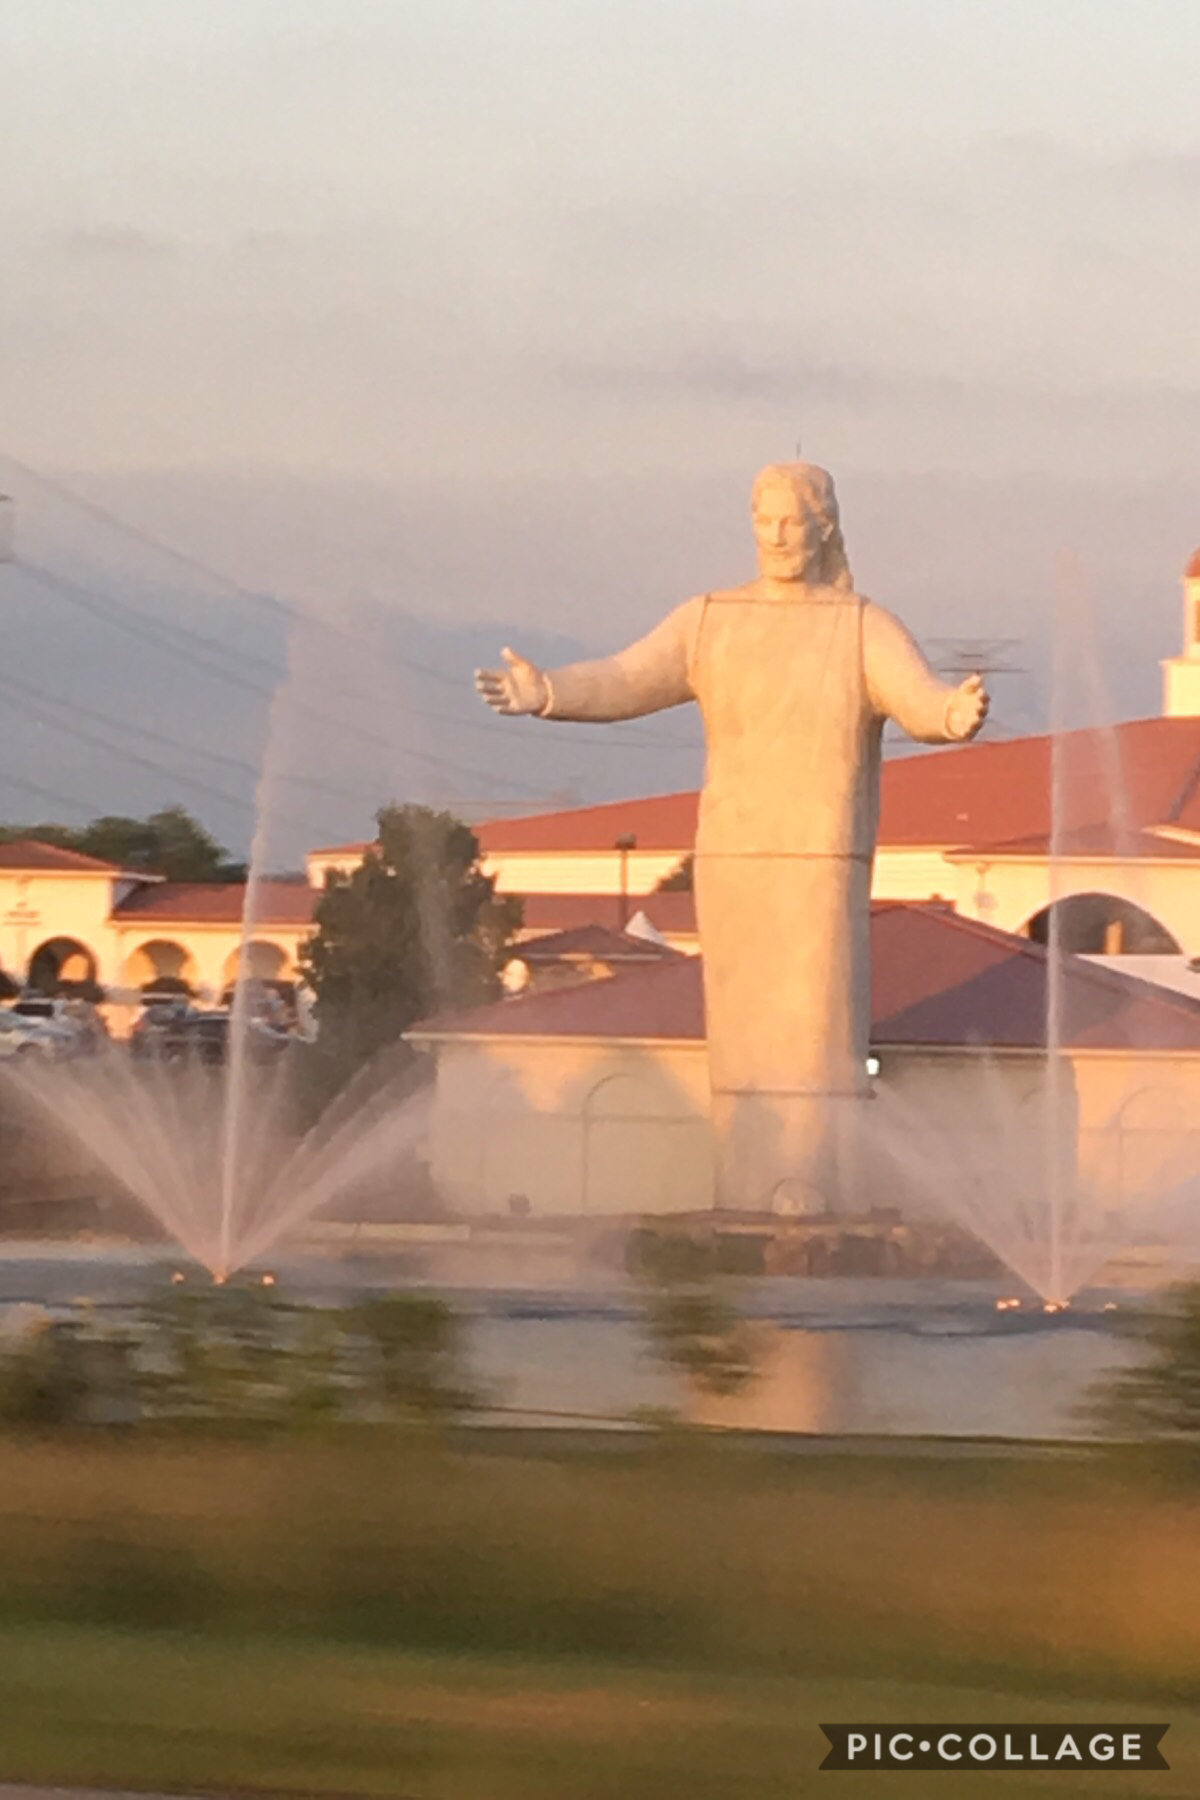 The giant Jesus of Ohio 